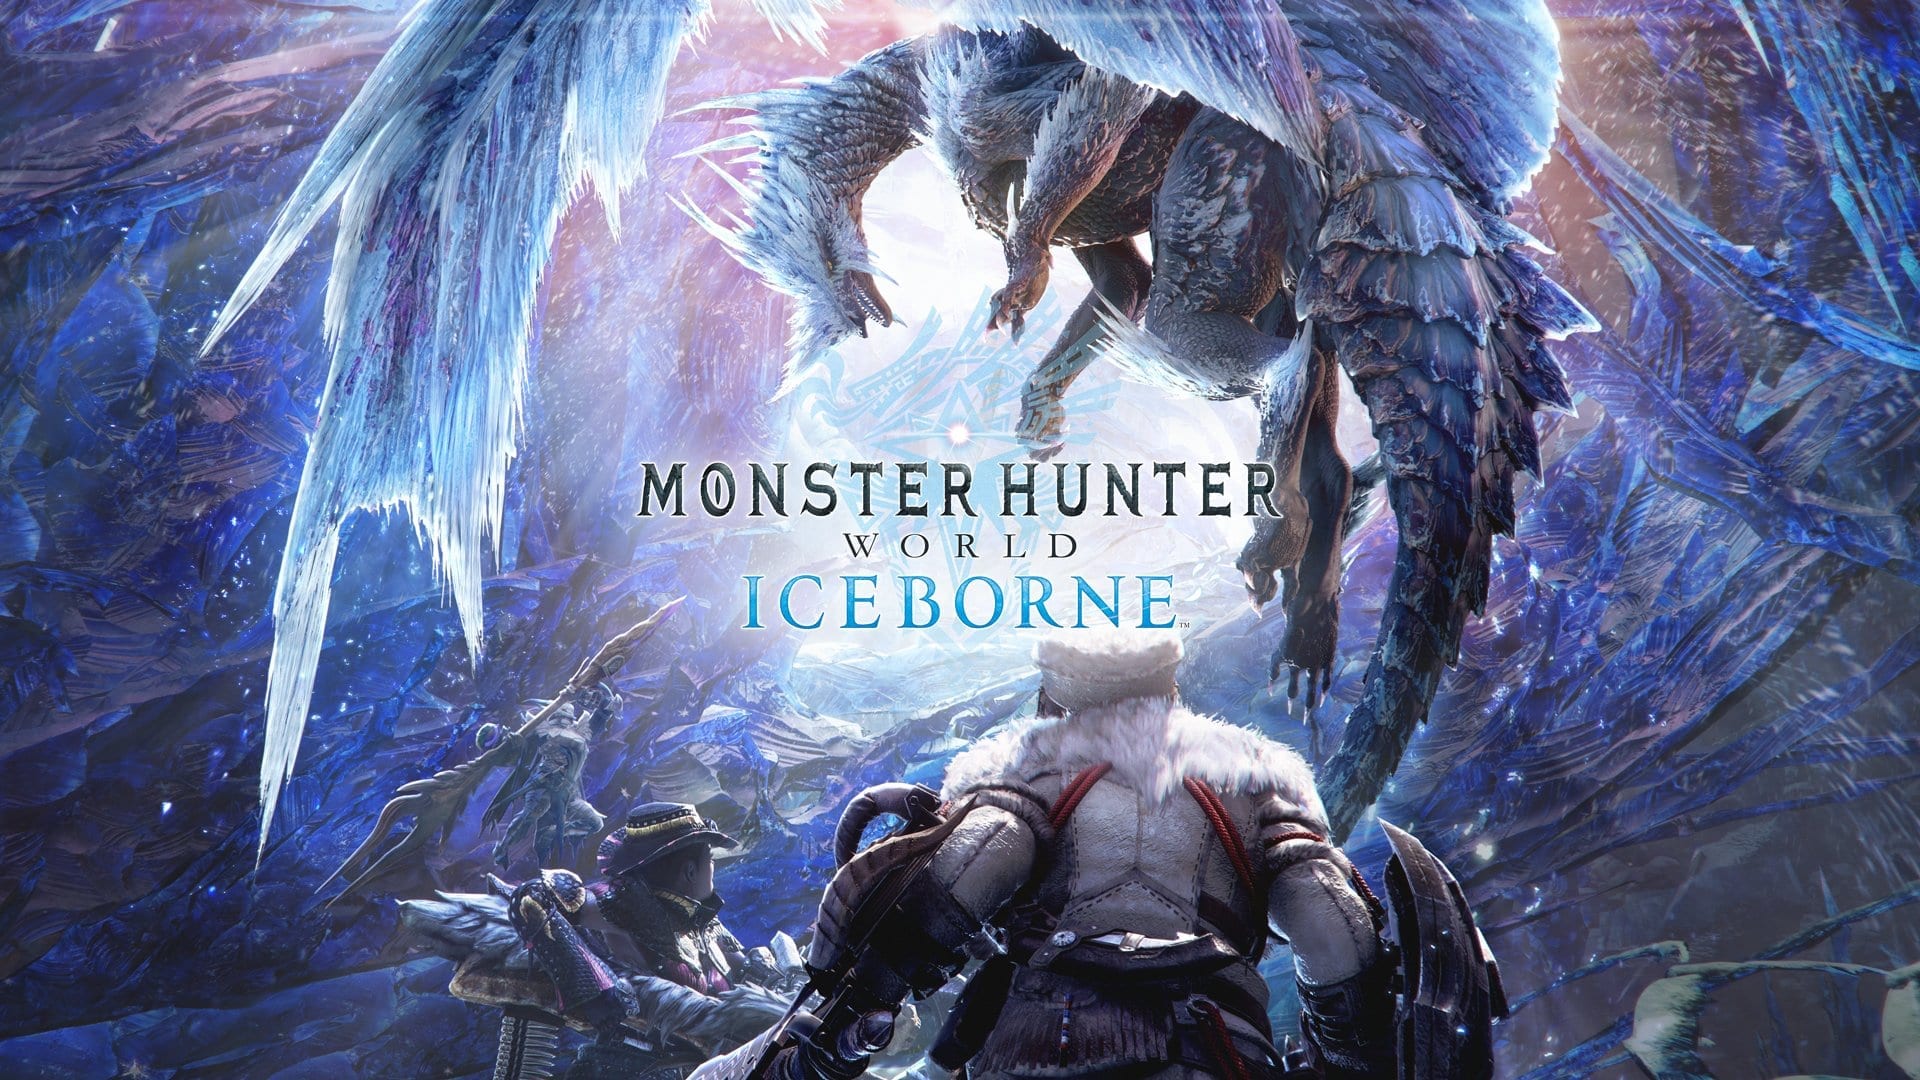 Monster Hunter World Iceborne Reveals Update Roadmap Including Variant